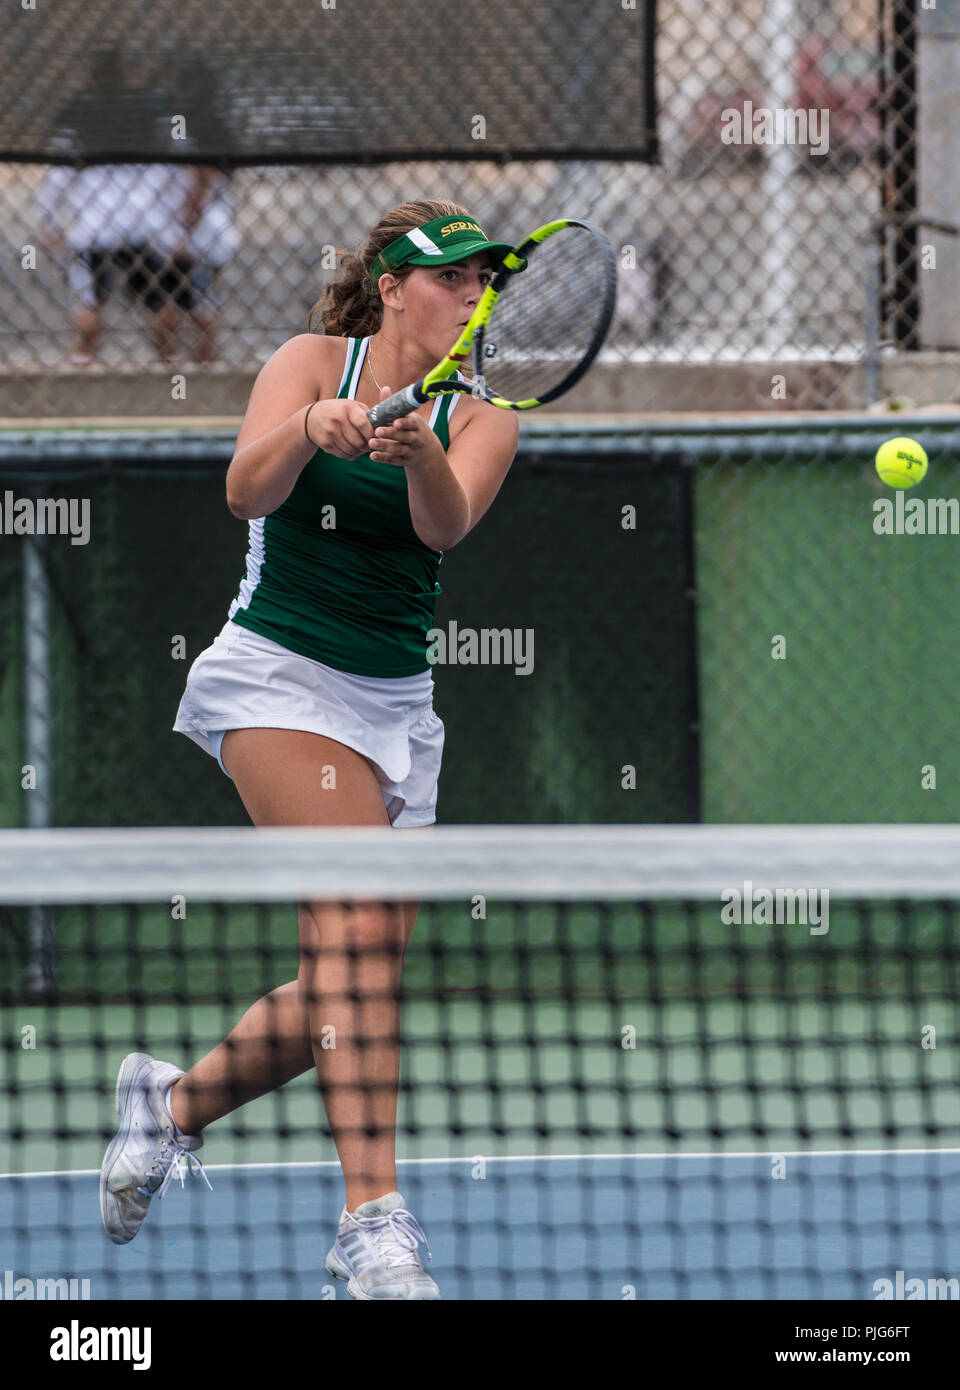 High School Varsity tennis player vom hl. Bonaventura in der Hof während ihr Match gegen hl. Bonaventura am 4. September 2018. Stockfoto